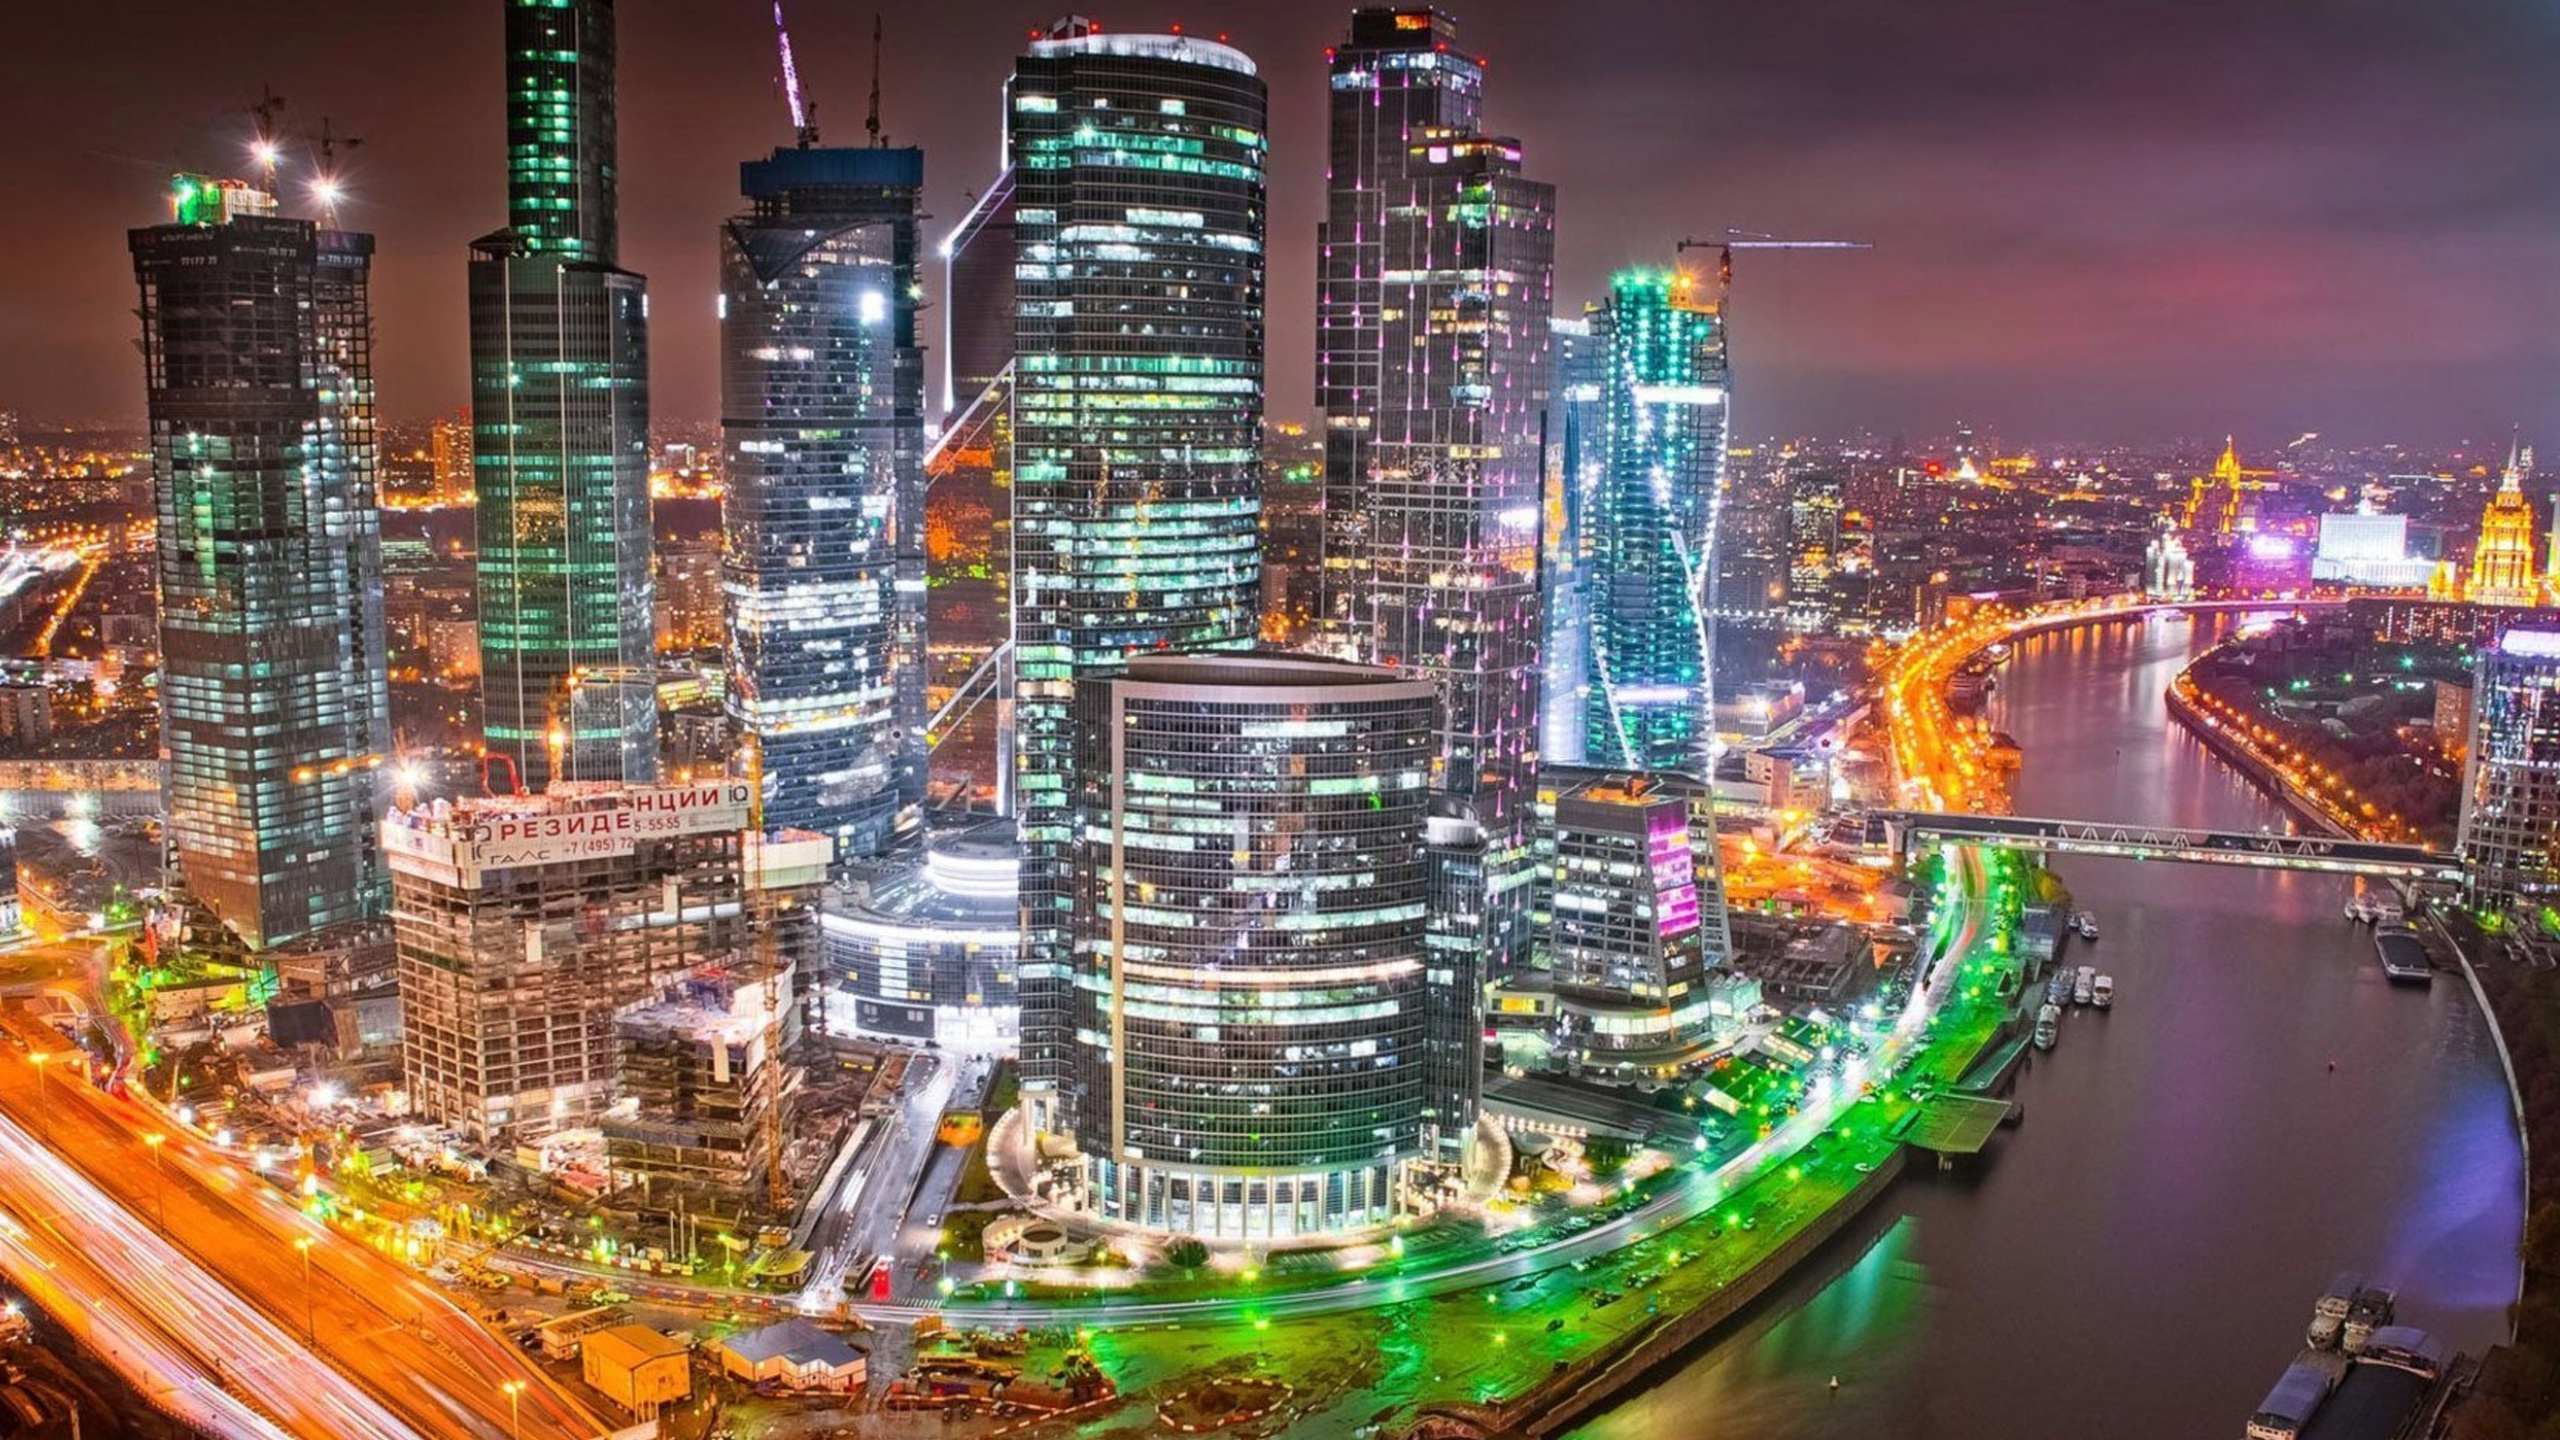 Самые хорошие города для жизни в россии